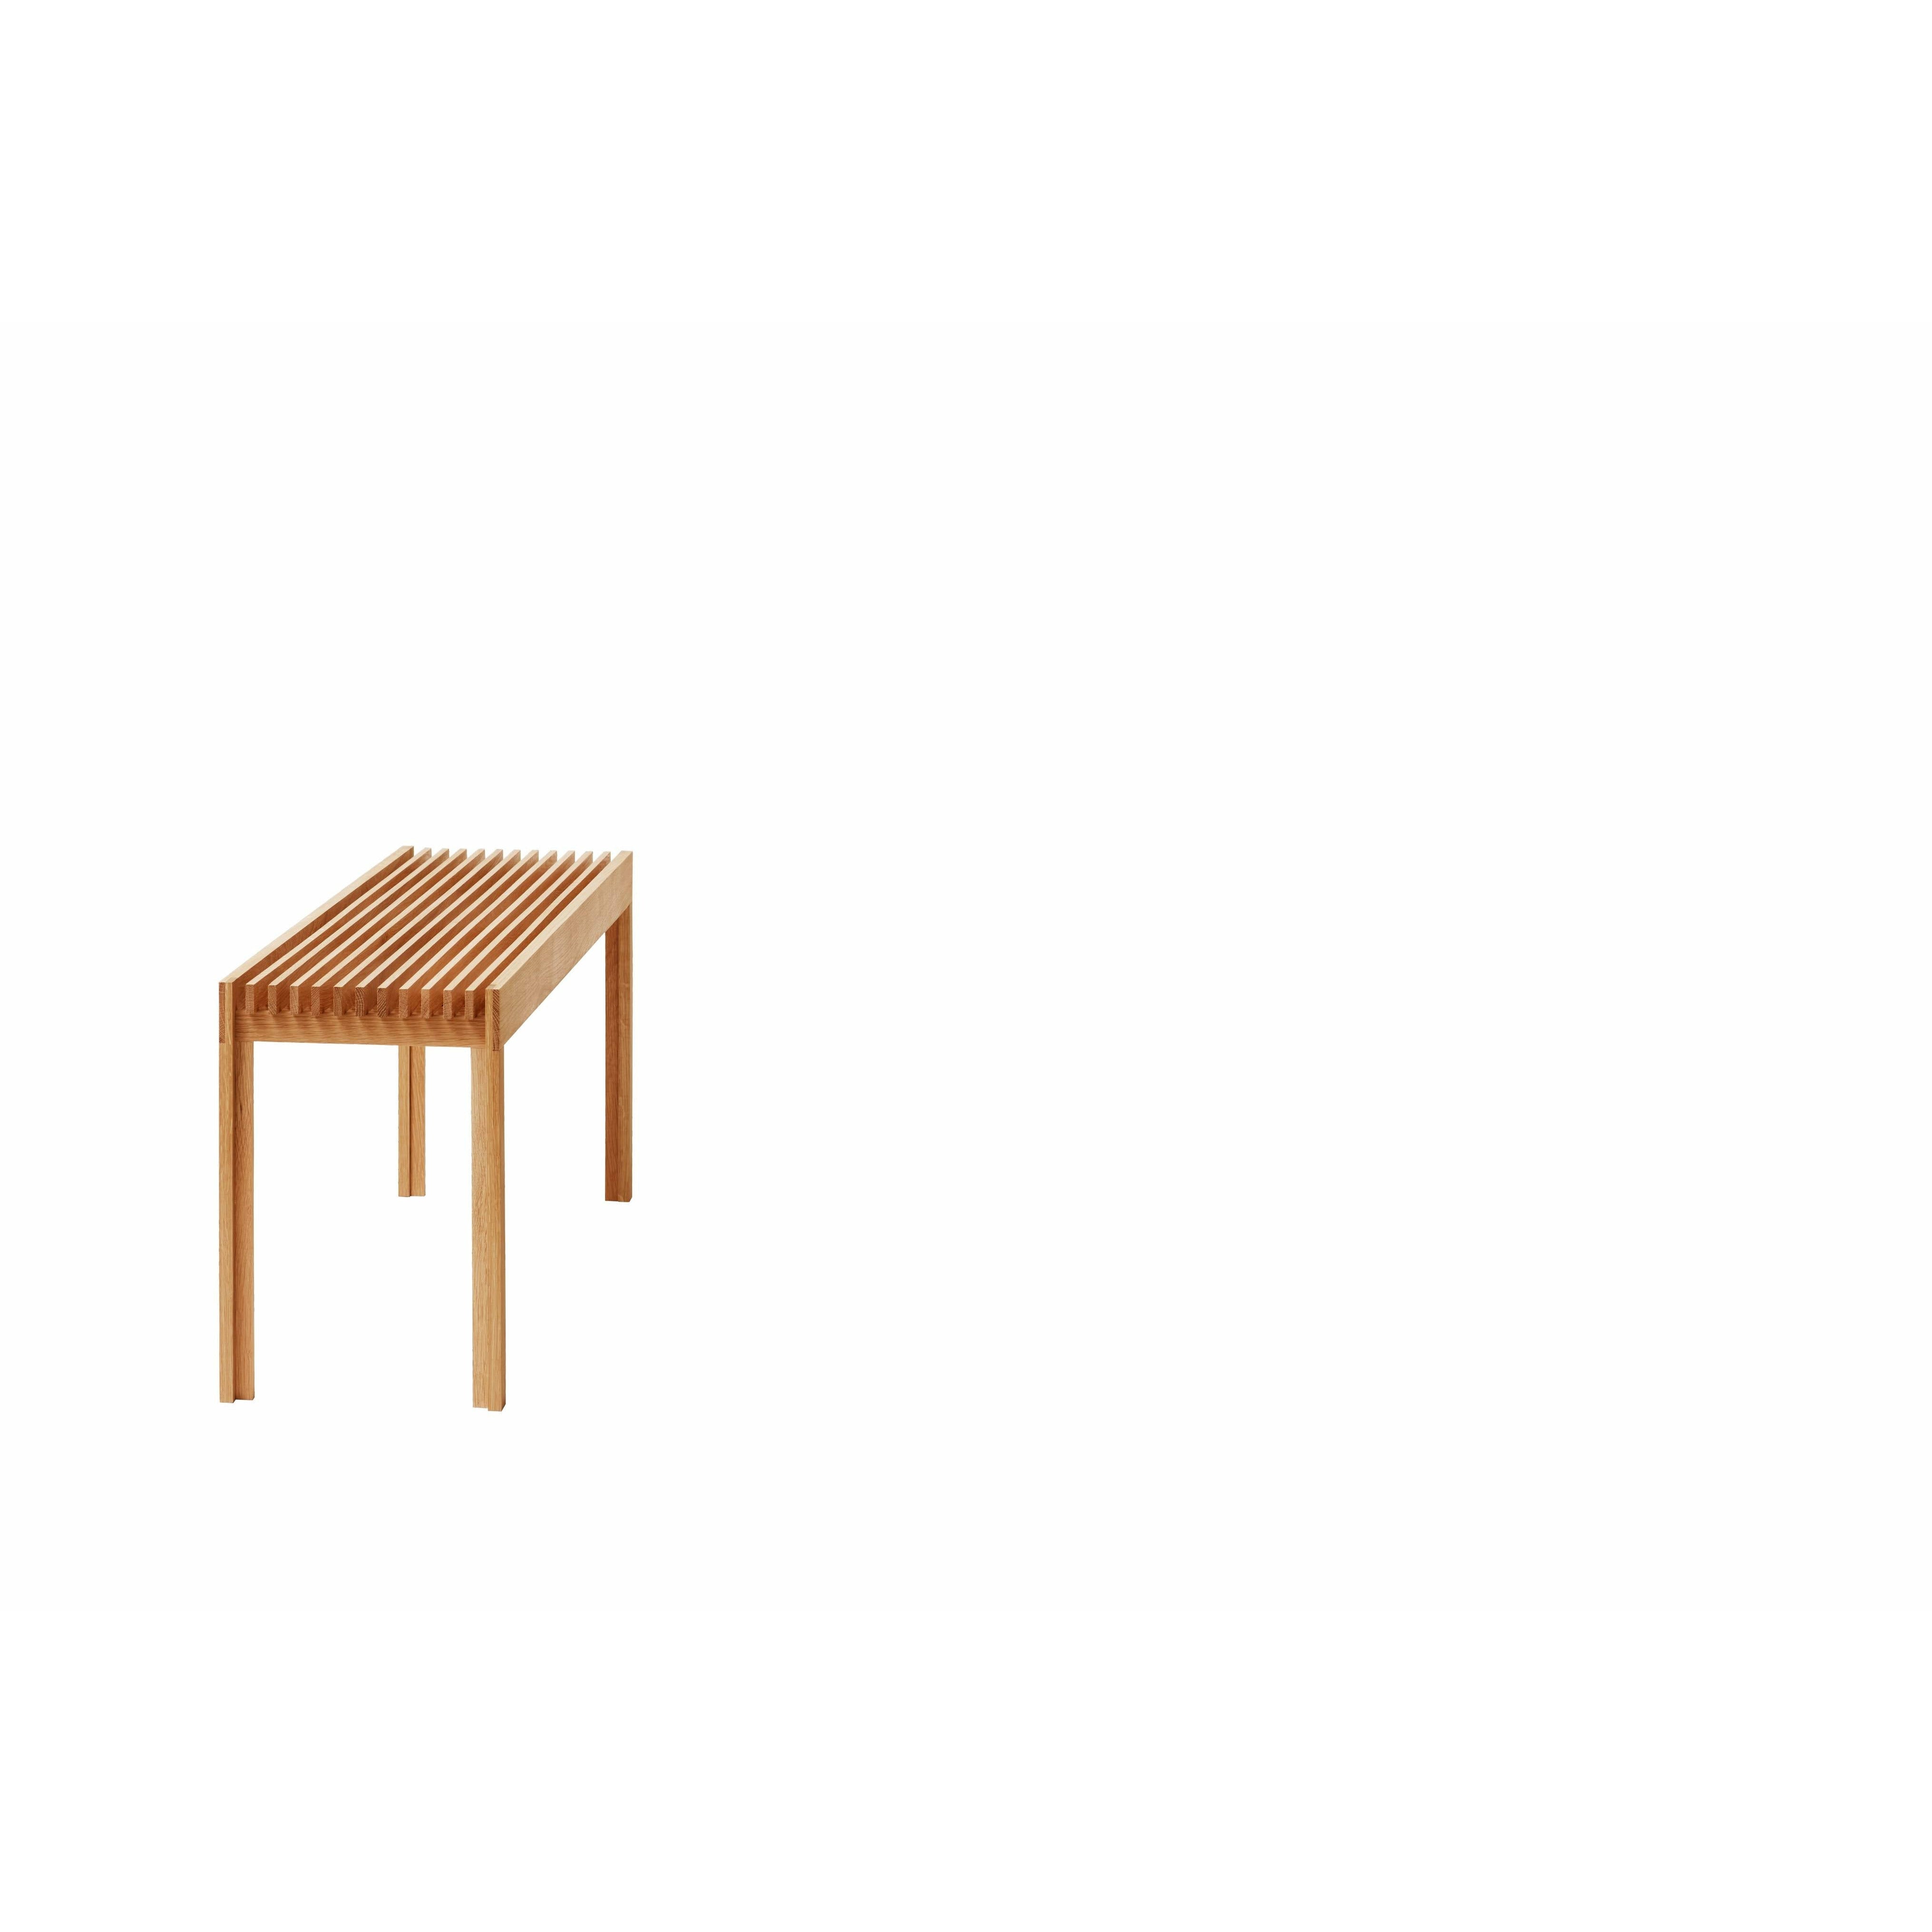 形式和完善轻便的长凳。橡木